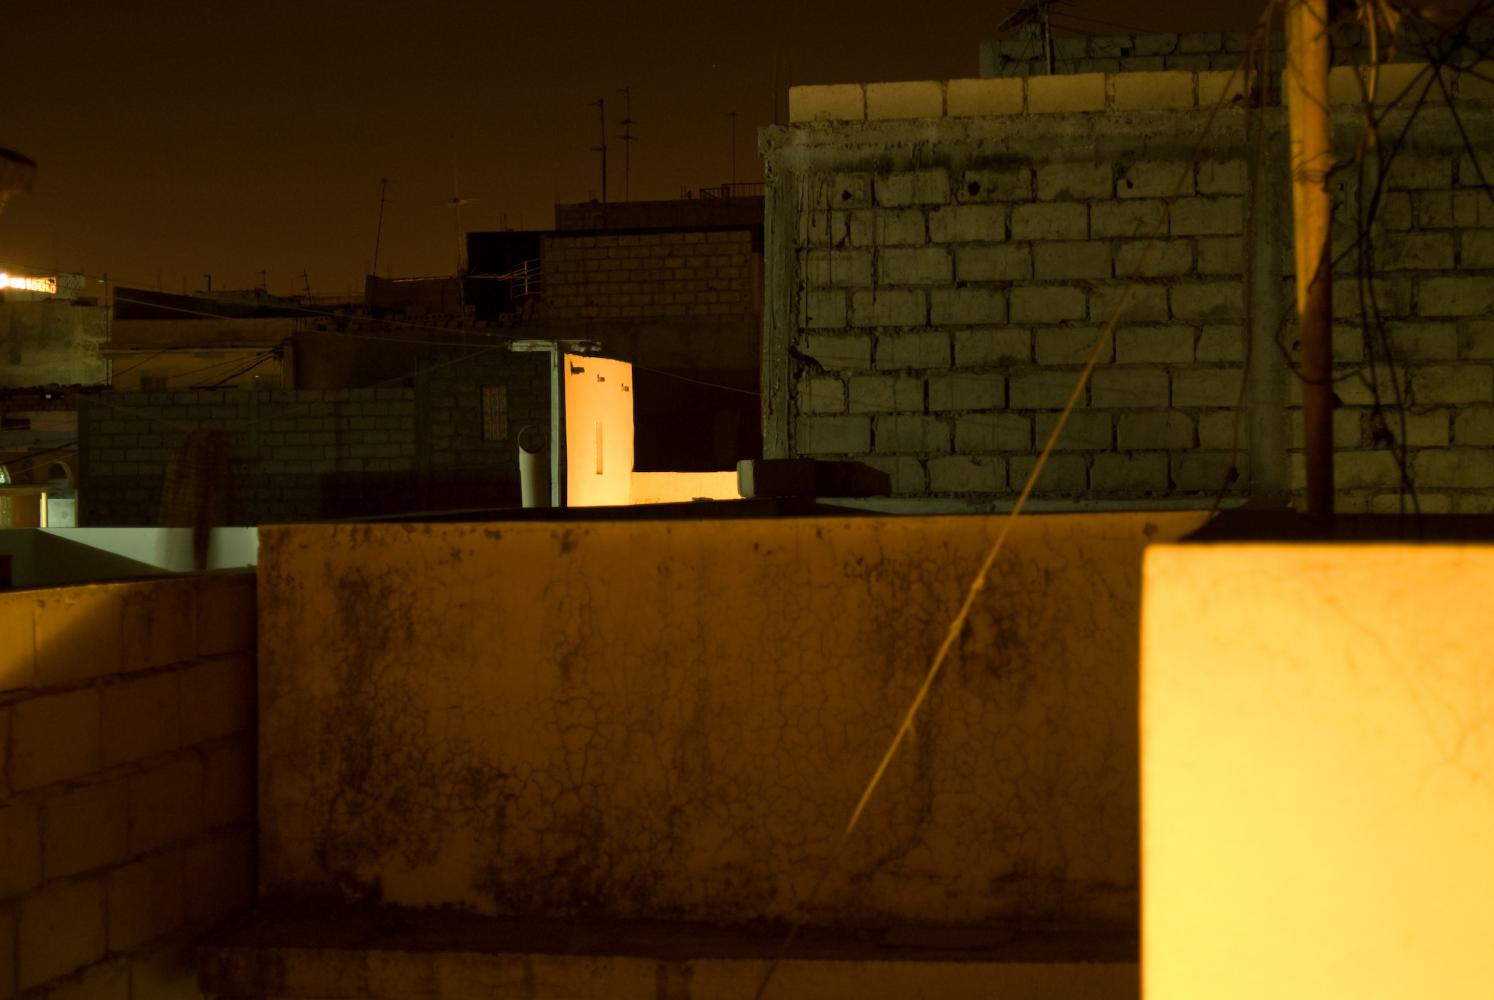 Les immeubles voisins de nuit, murs de parpaings ou peints, parfois éclairés par une lumière orange. Dakar, Sénégal, mars 2010.